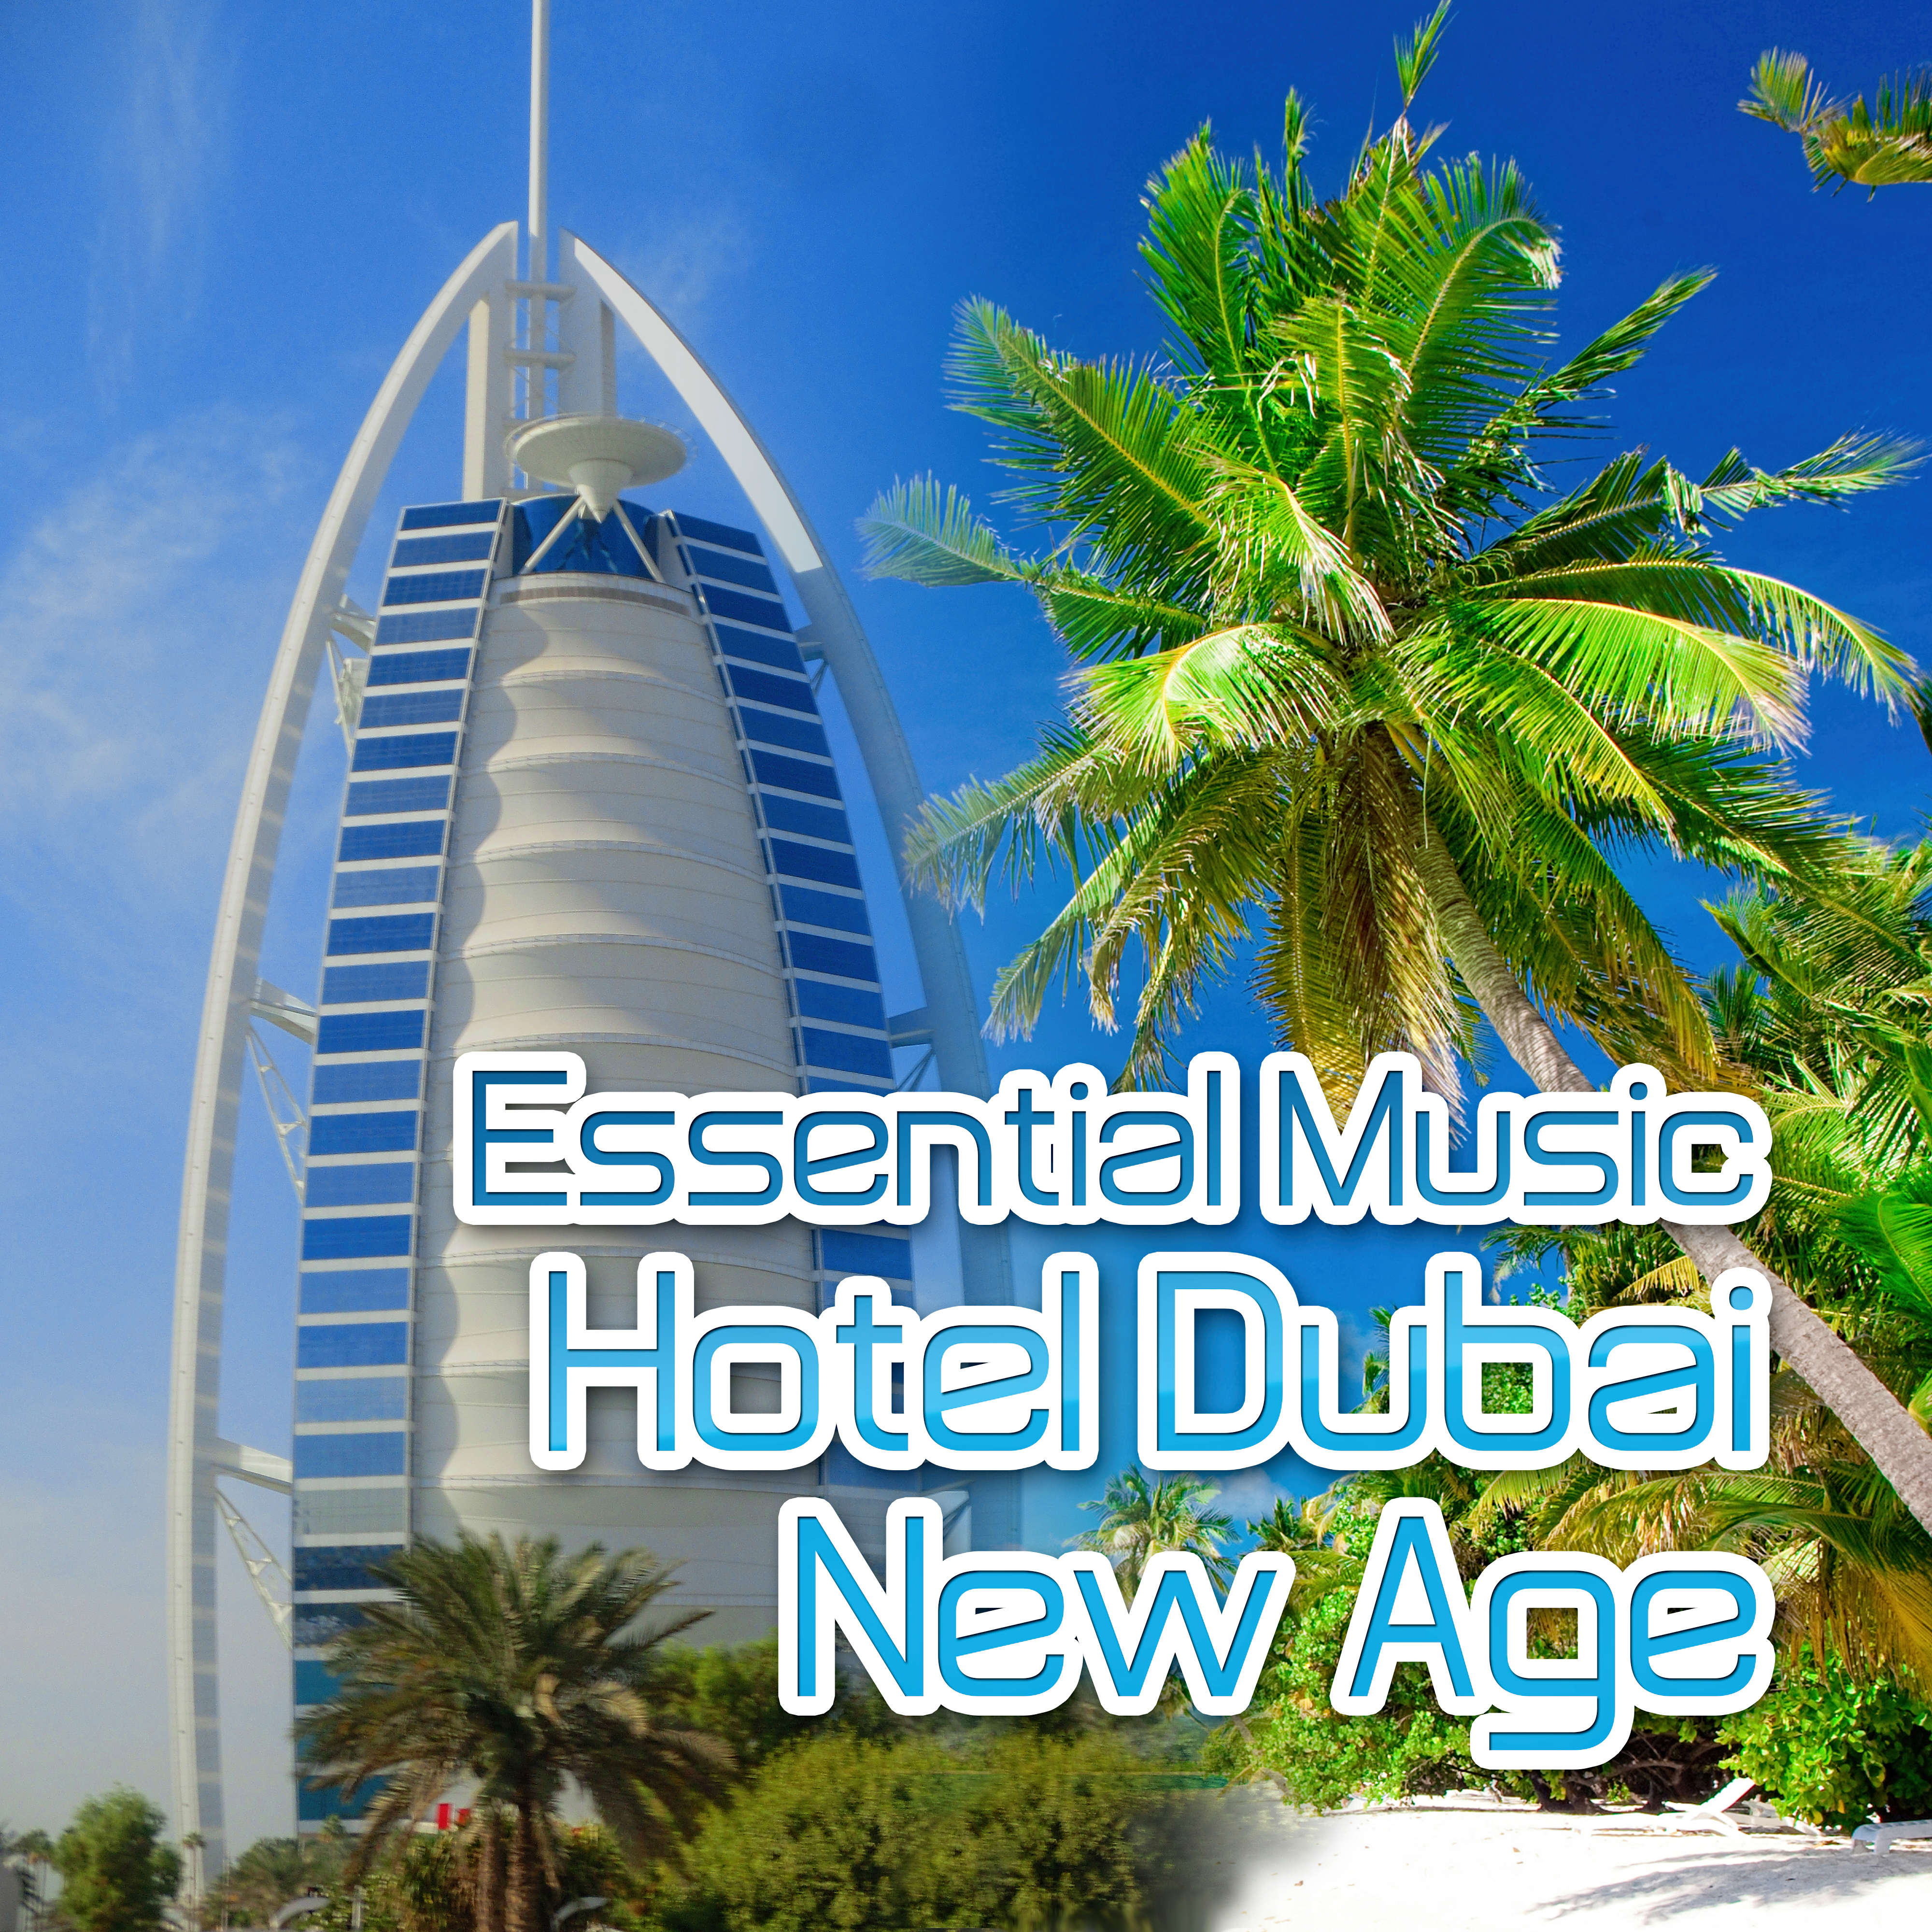 Spa Hotel Dubai